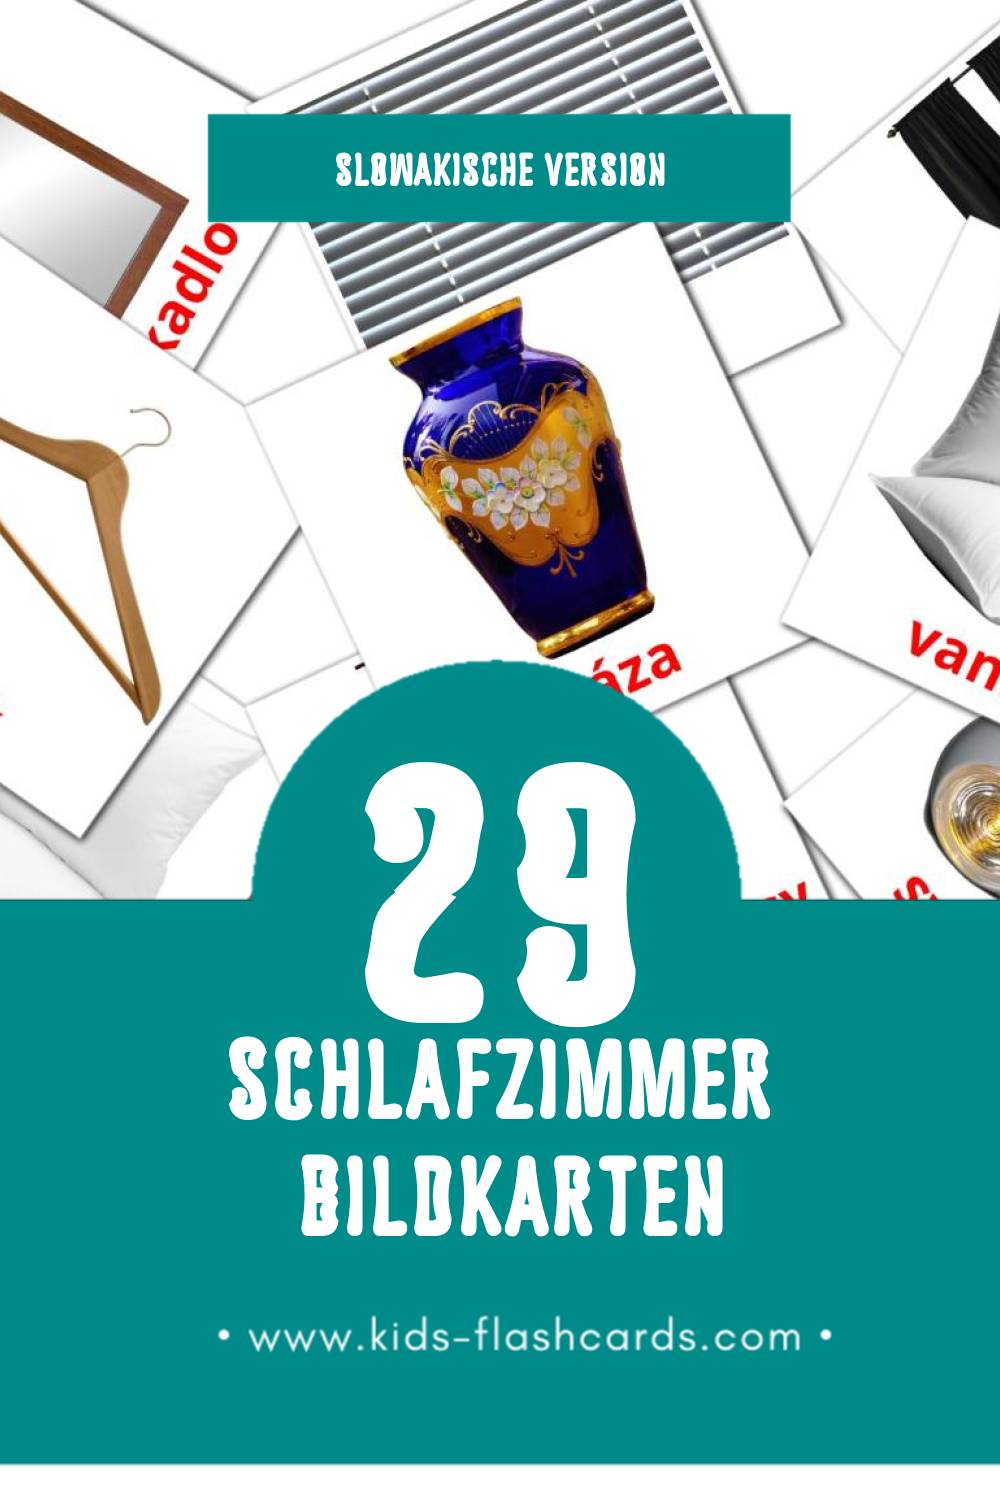 Visual Spálne Flashcards für Kleinkinder (29 Karten in Slowakisch)